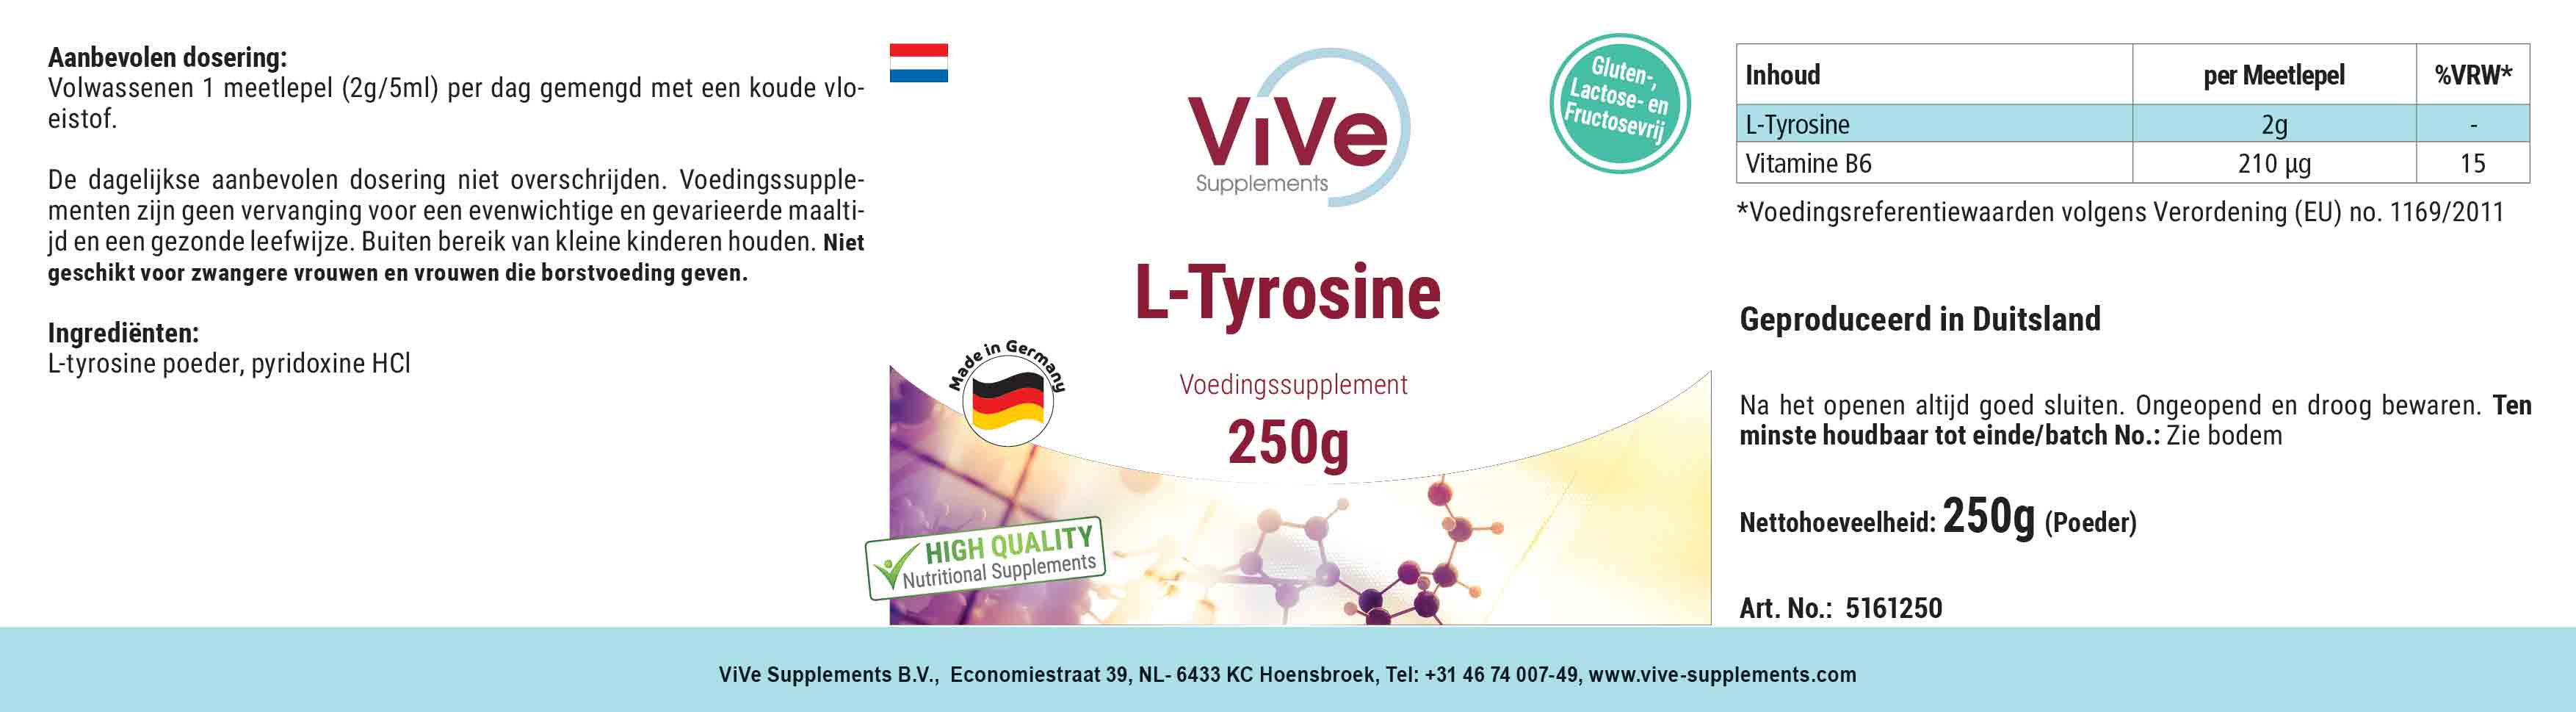 L-Tirosina in polvere 250g + Vitamina B6